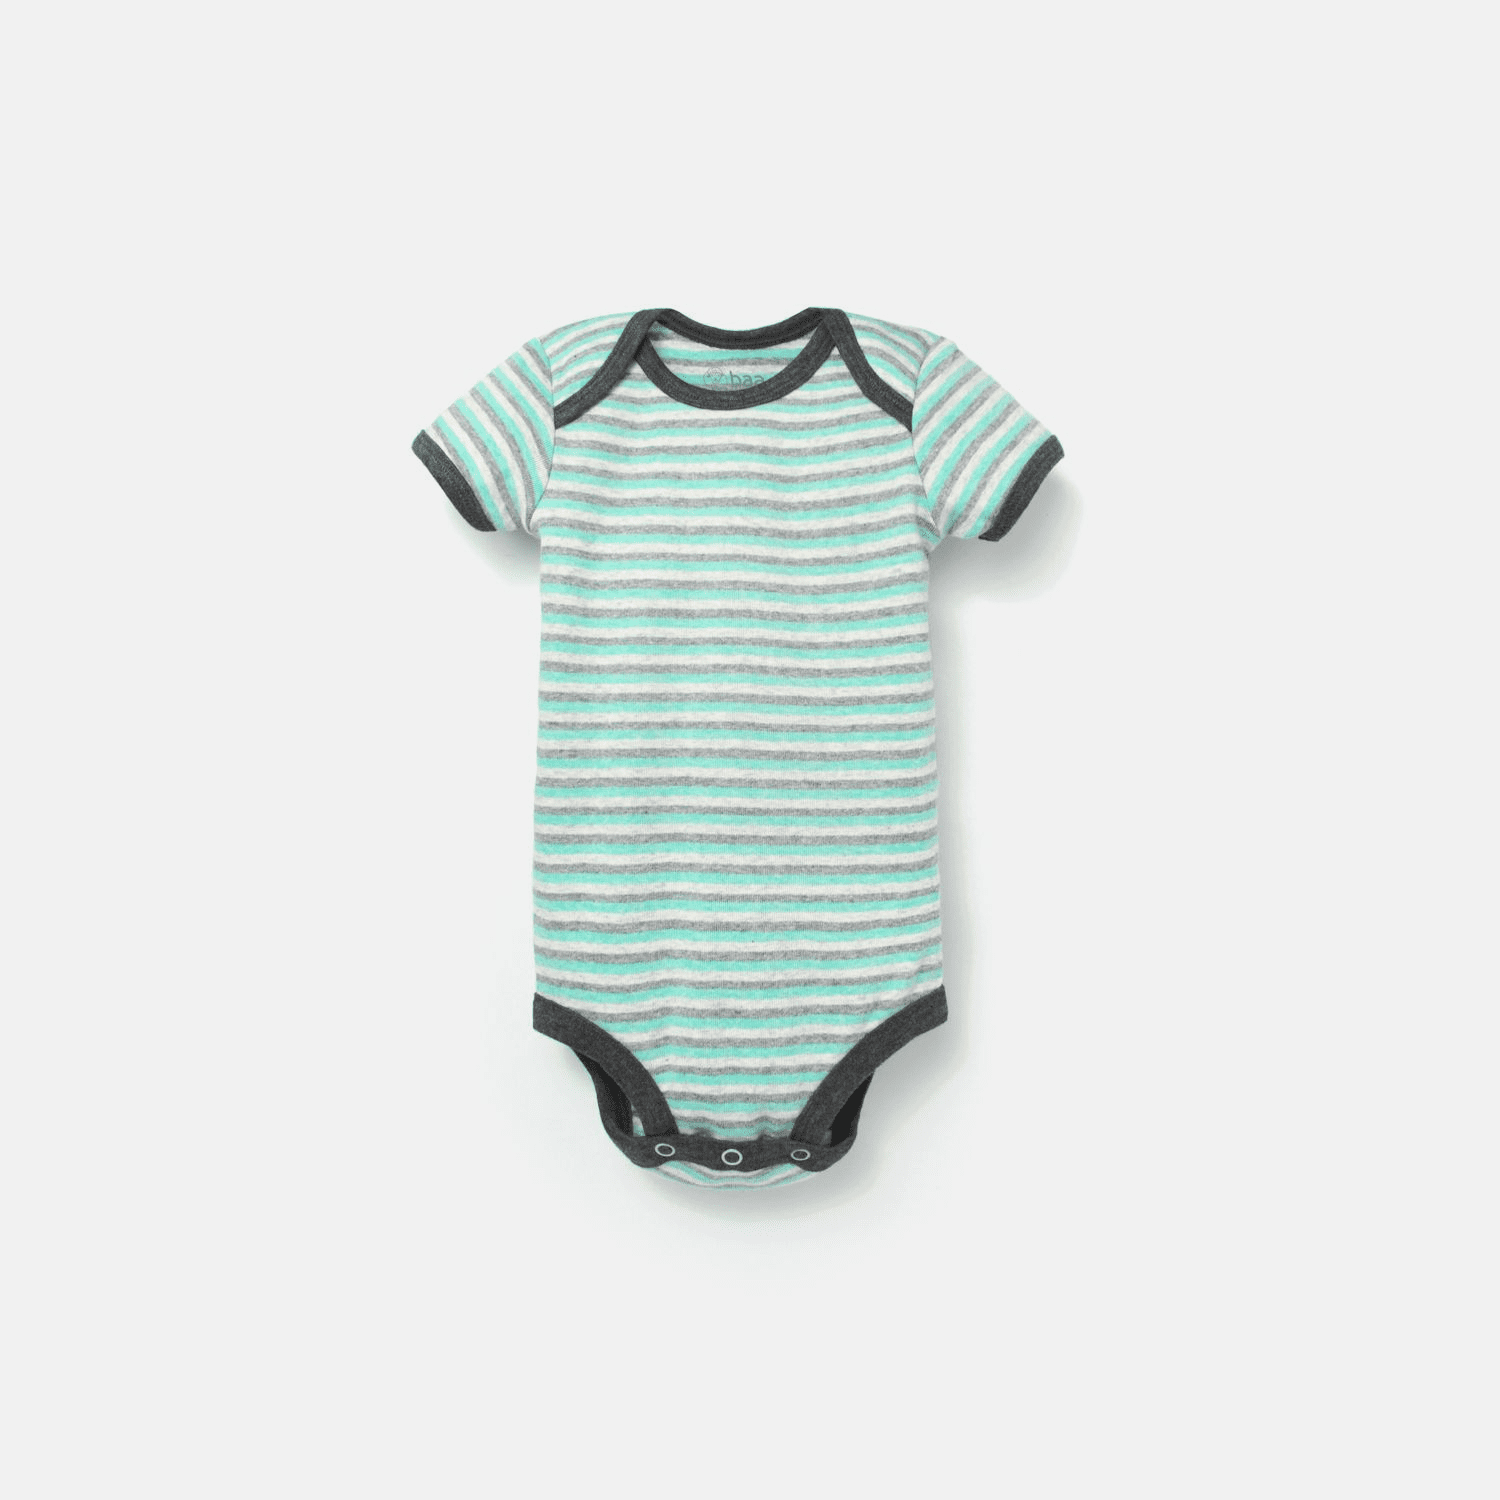 Đầm cho bé sơ sinh 3-6-9 tháng tuổi – DoChoBeYeu.com